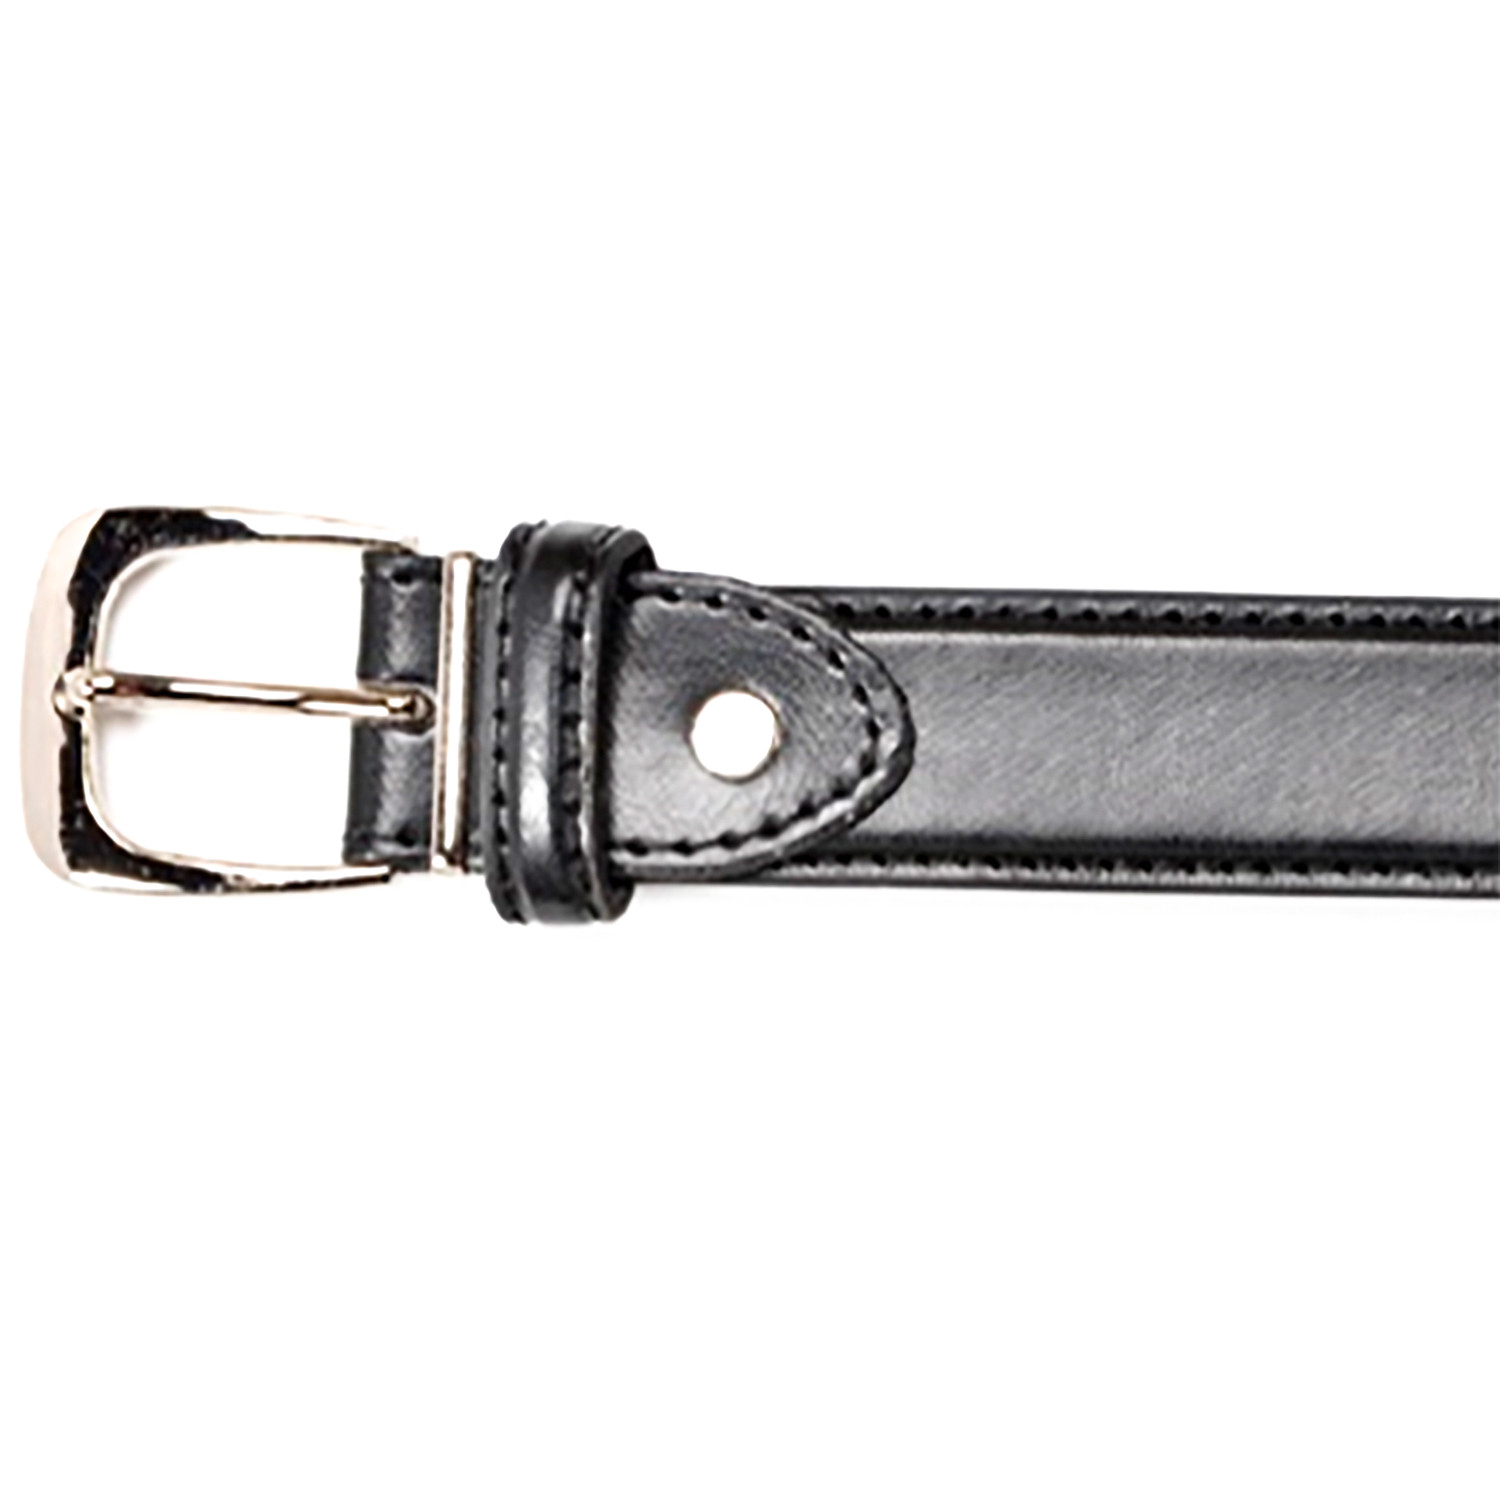 Men's Stylish Black Leather Belt - Black / XL Image